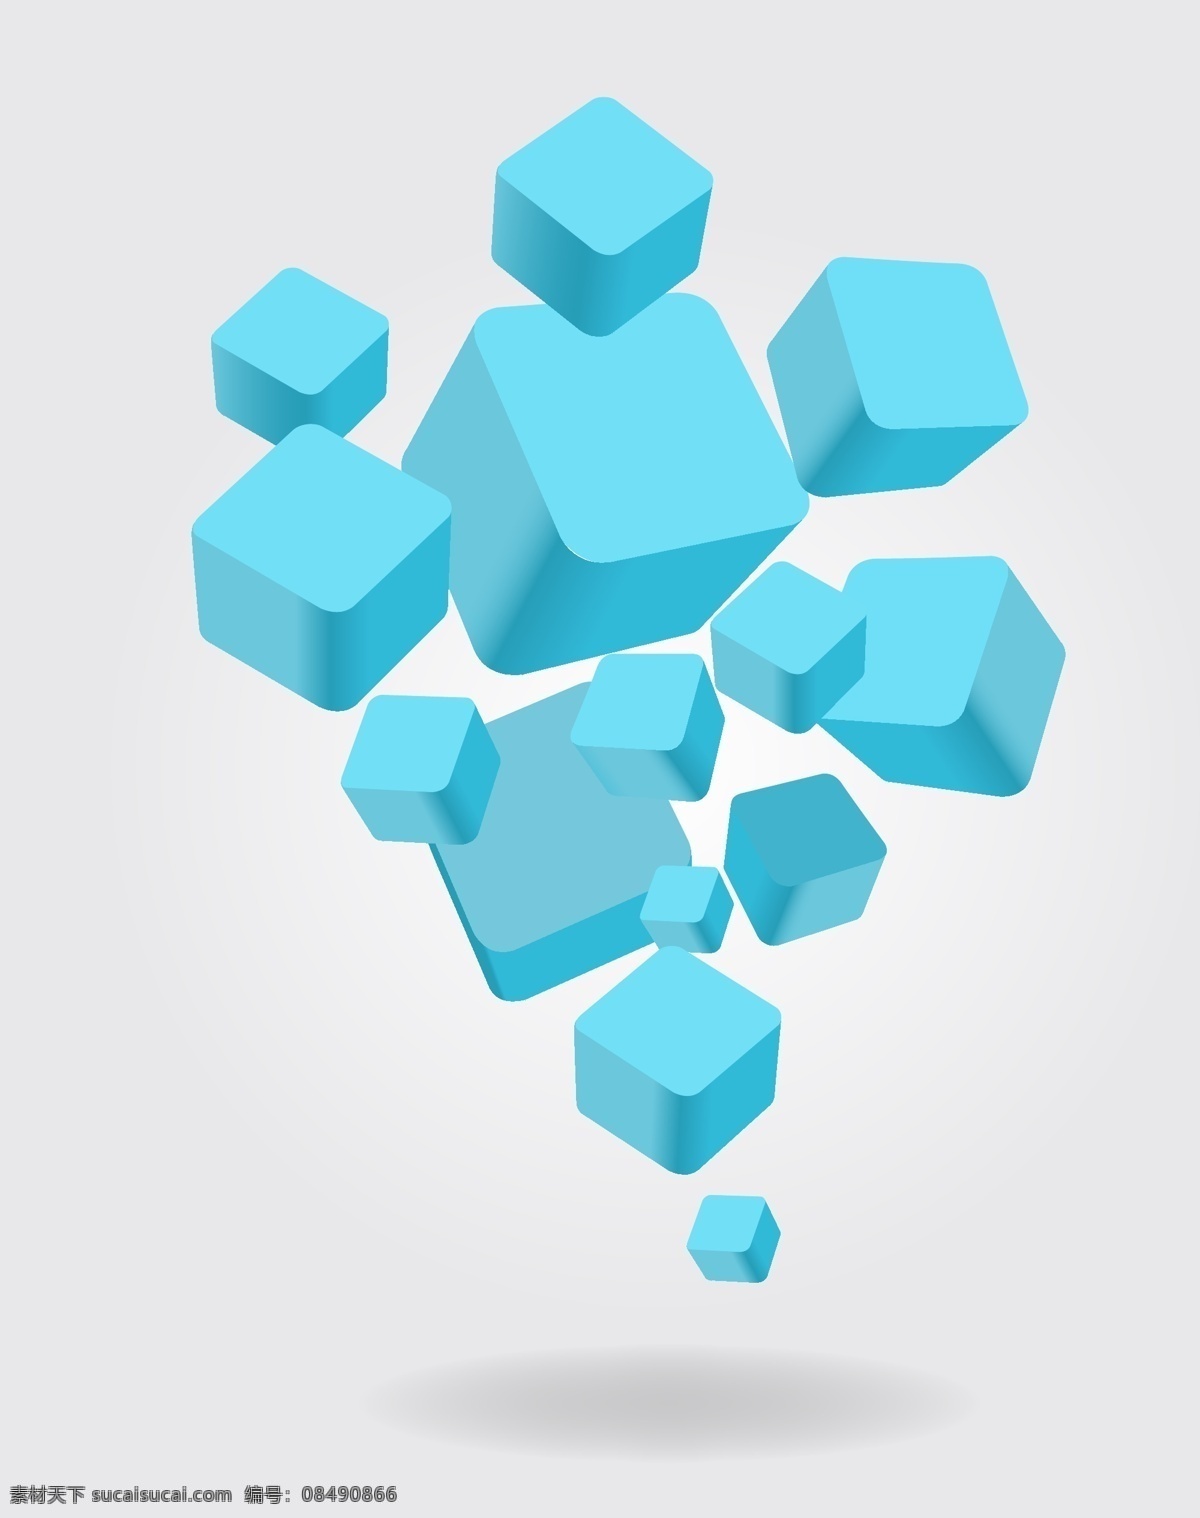 立体几何 方块 矢量 立体 几何 矢量素材 背景素材 设计素材